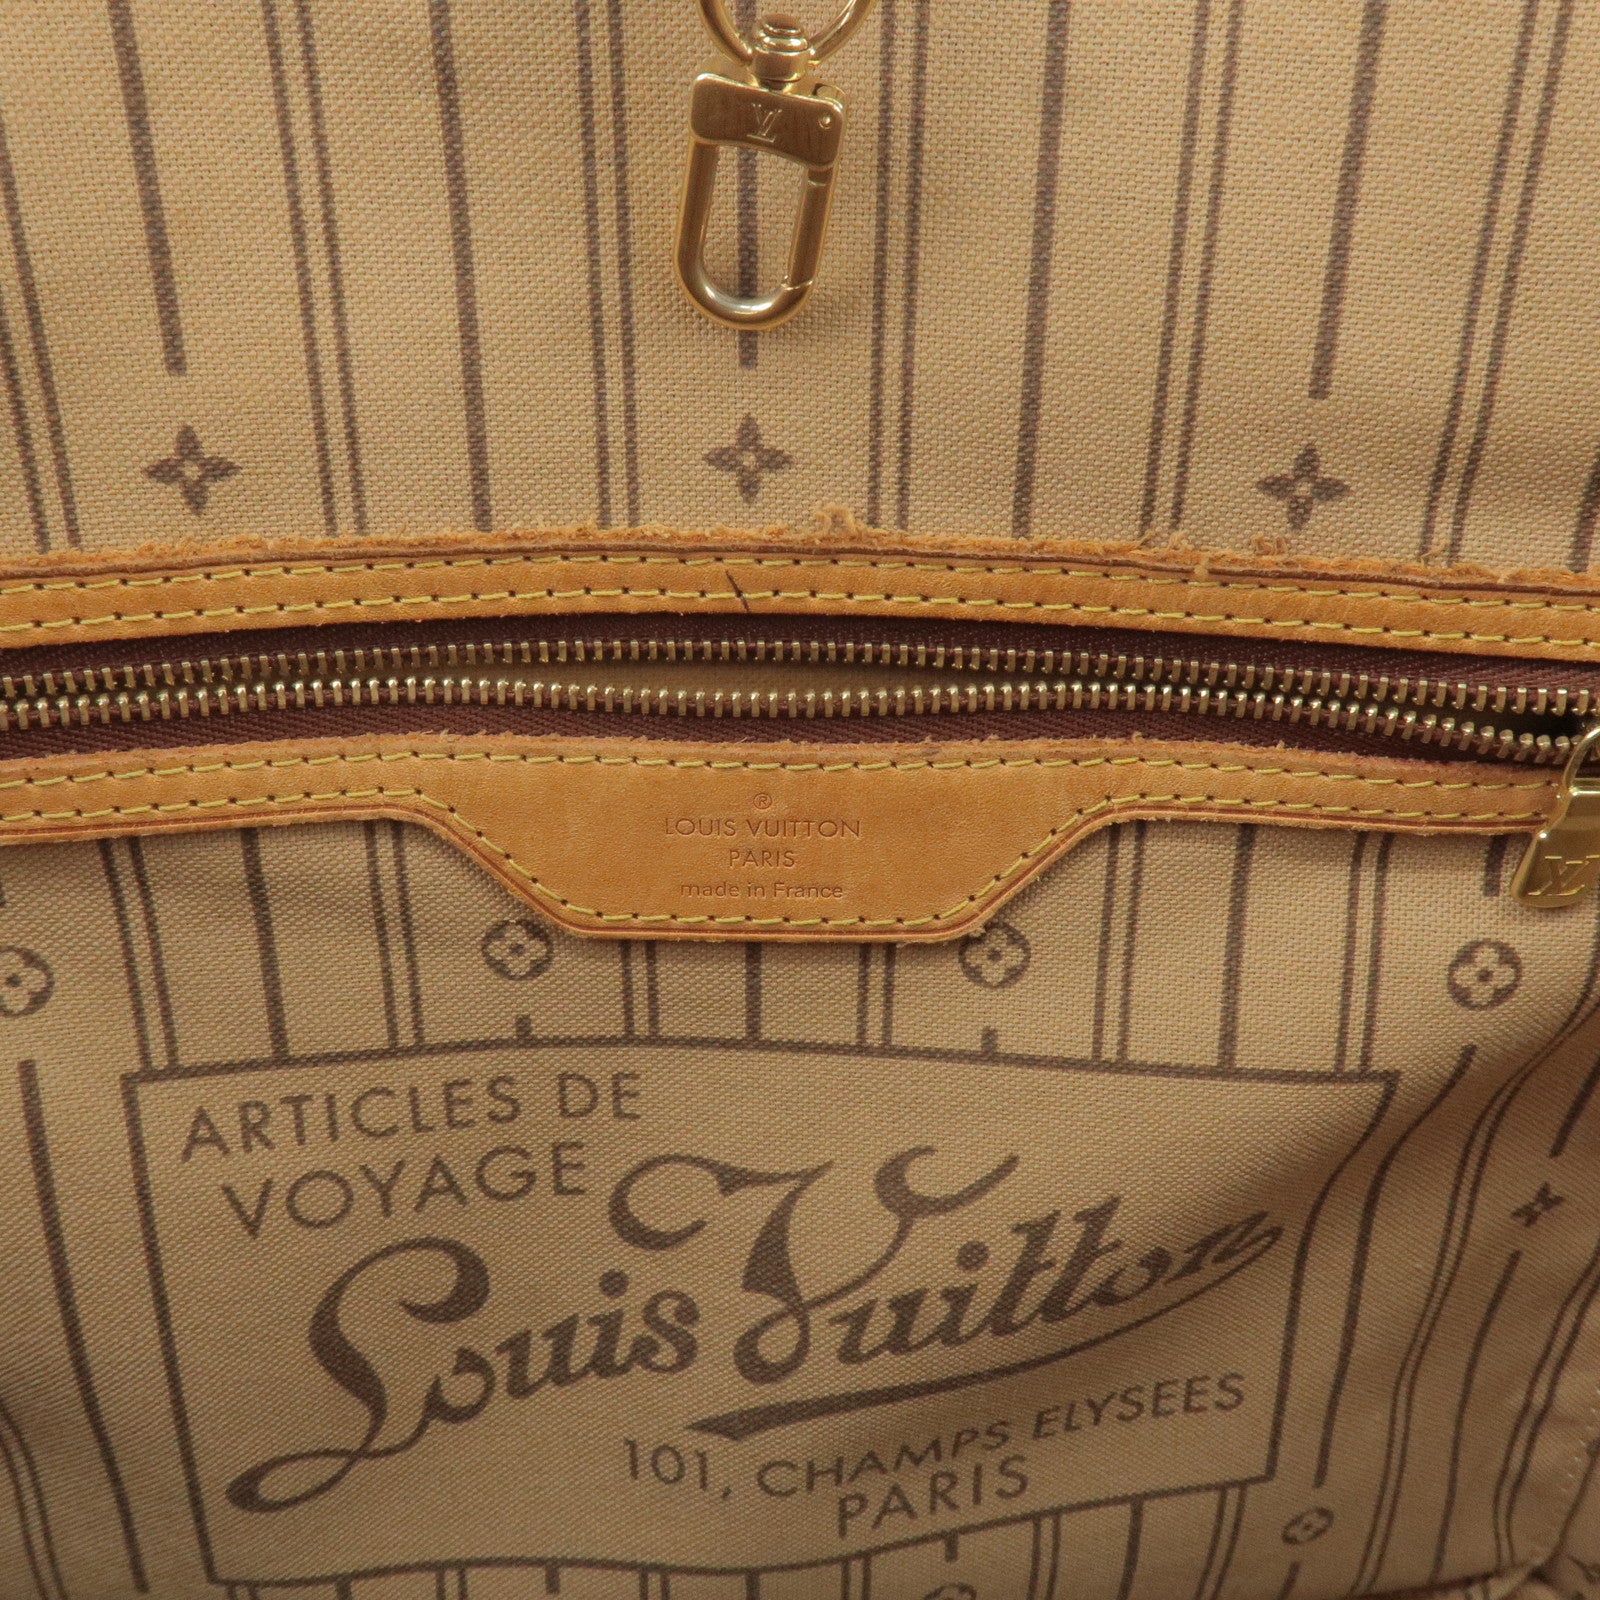 Louis Vuitton Articles De Voyage Monogram Neverfull Tote Bag